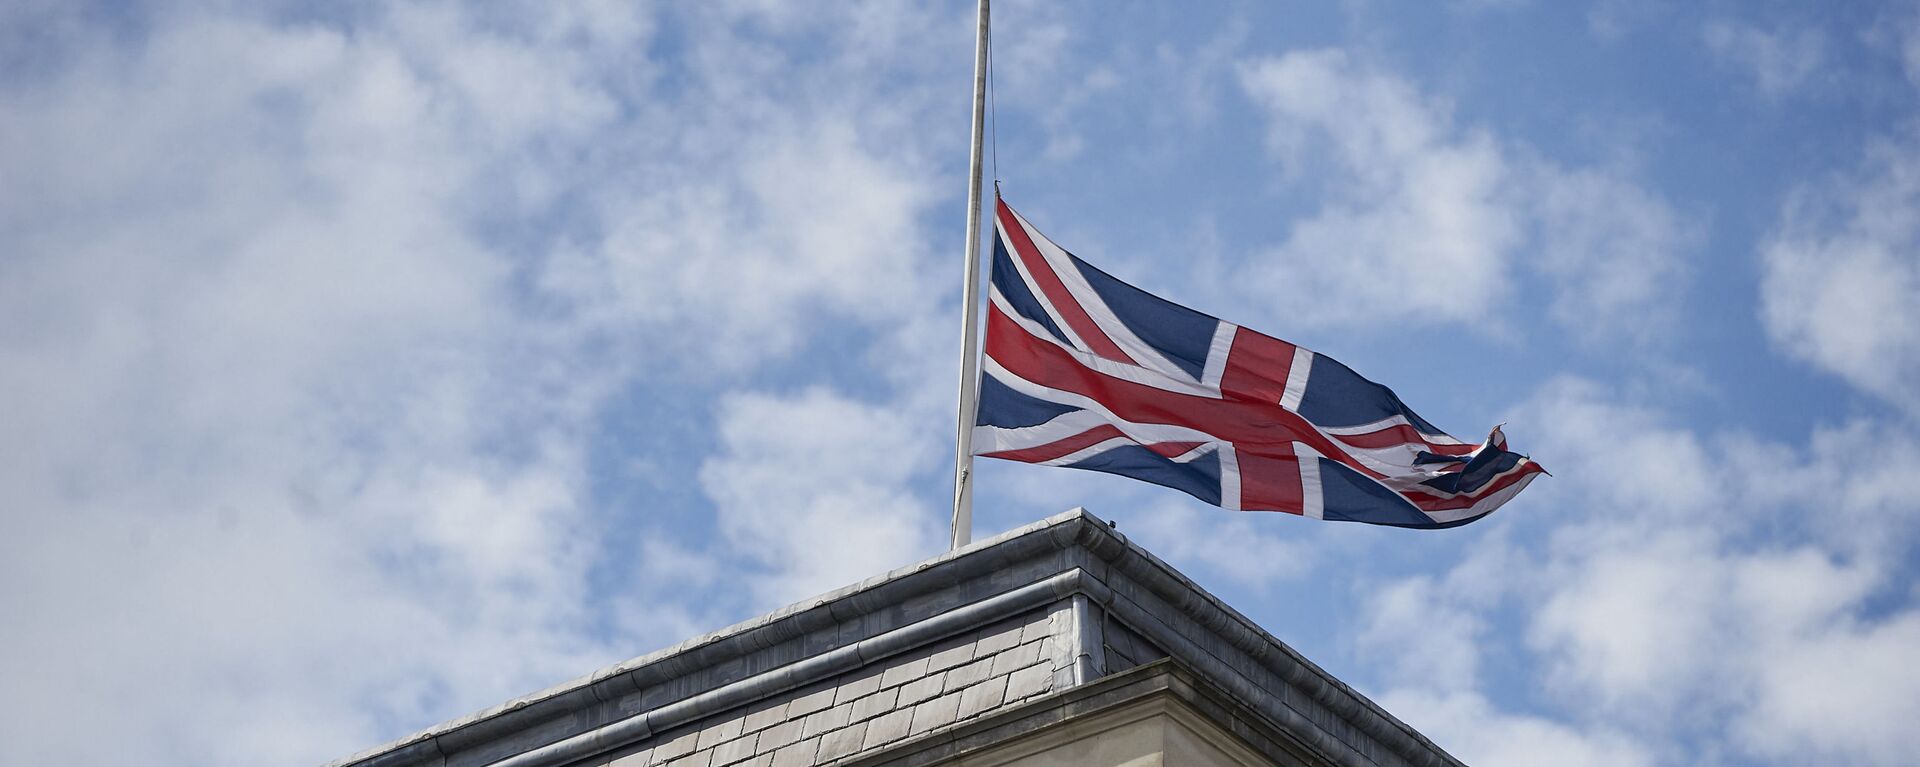 Quốc kỳ Anh trên tòa nhà Bộ Ngoại giao Anh ở London. - Sputnik Việt Nam, 1920, 25.04.2022